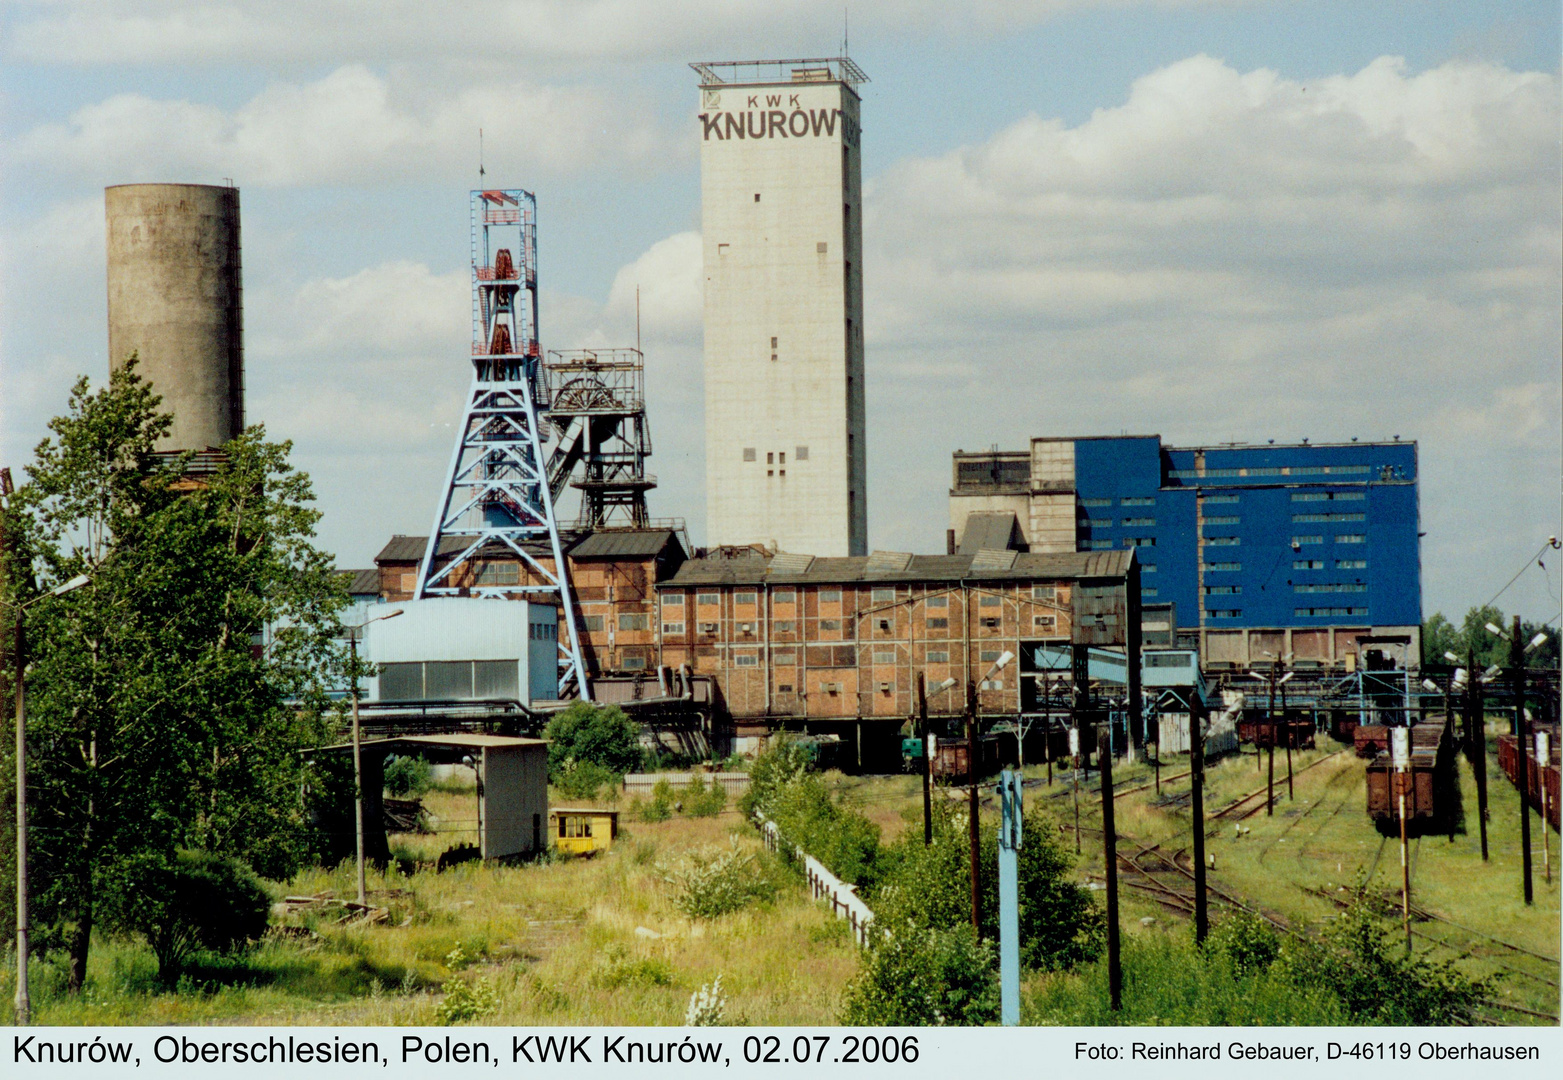 Knurów, Oberschlesien, Polen, KWK Knurów, 2006